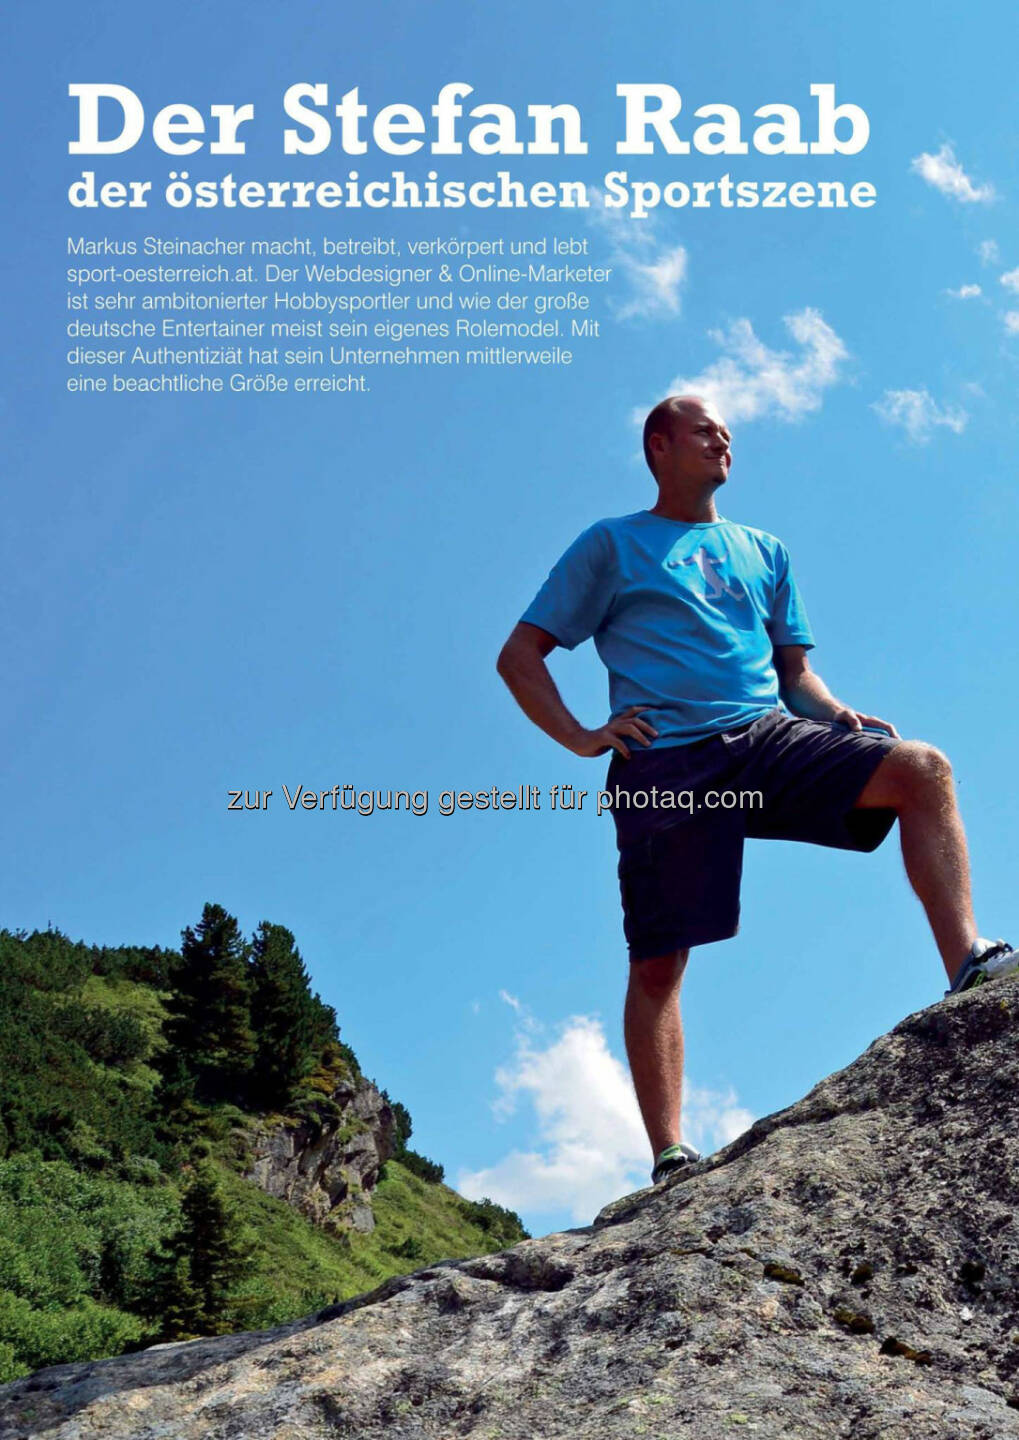 Markus Steinacher im Business Athlete Award Magazine 